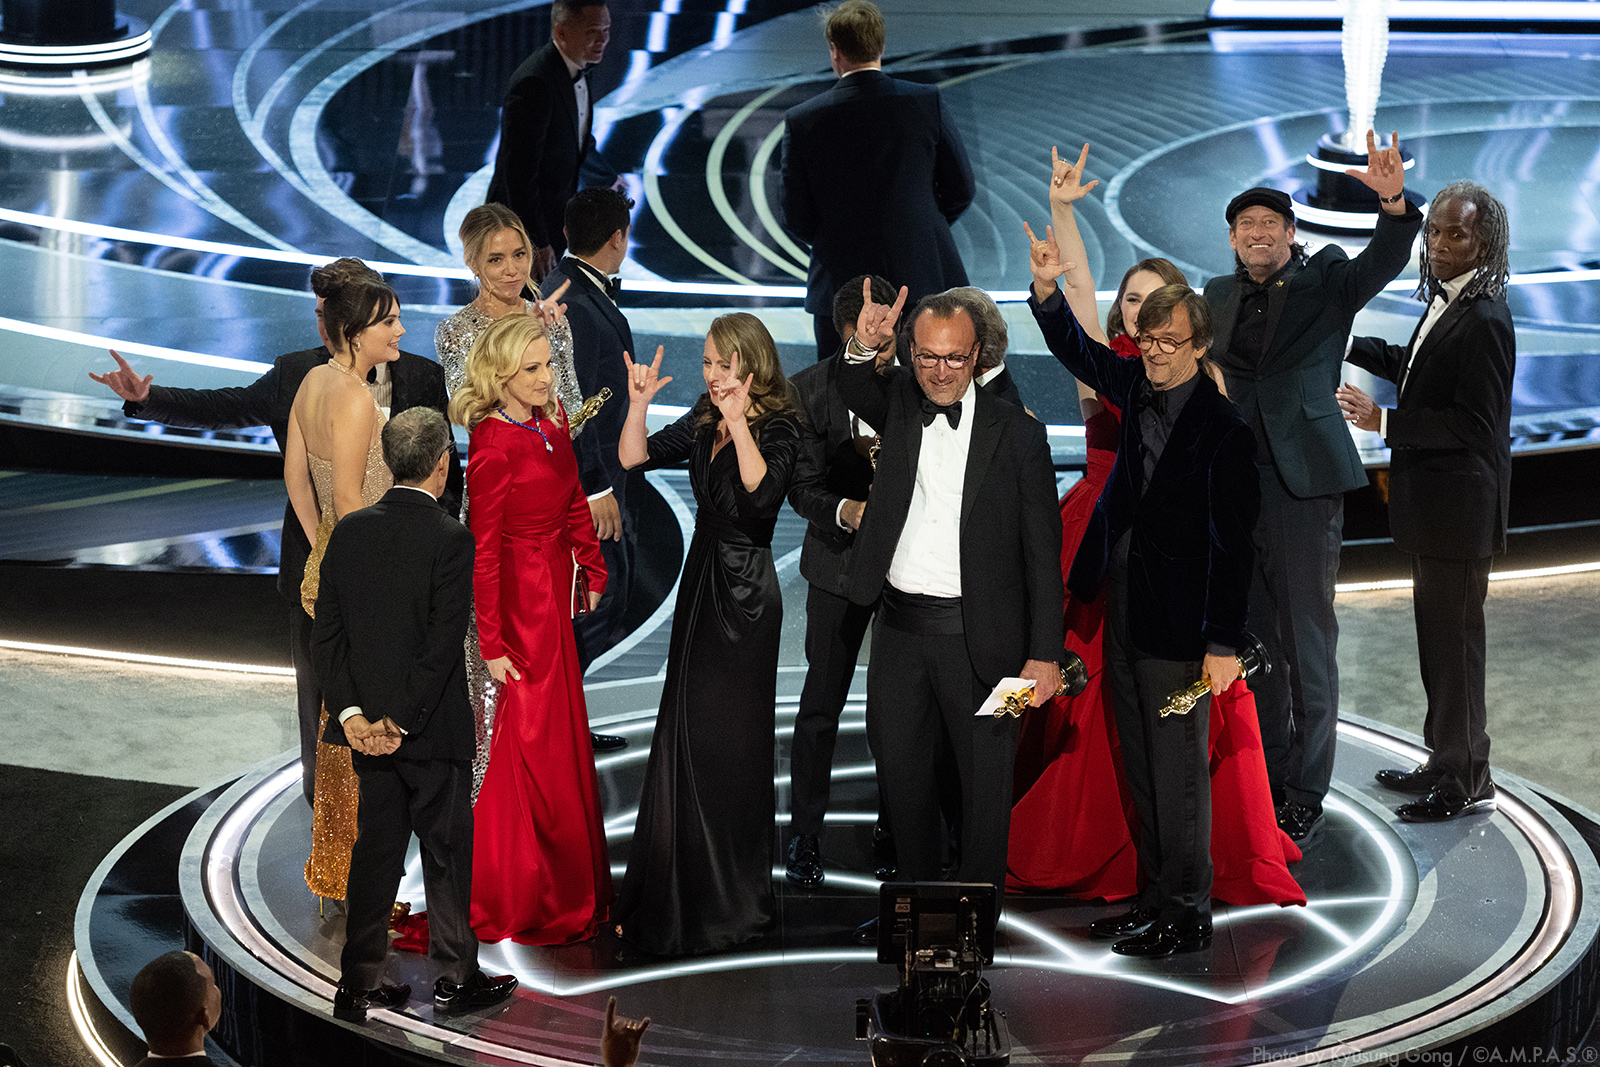 Oscars 2022: 94th Academy Awards winners